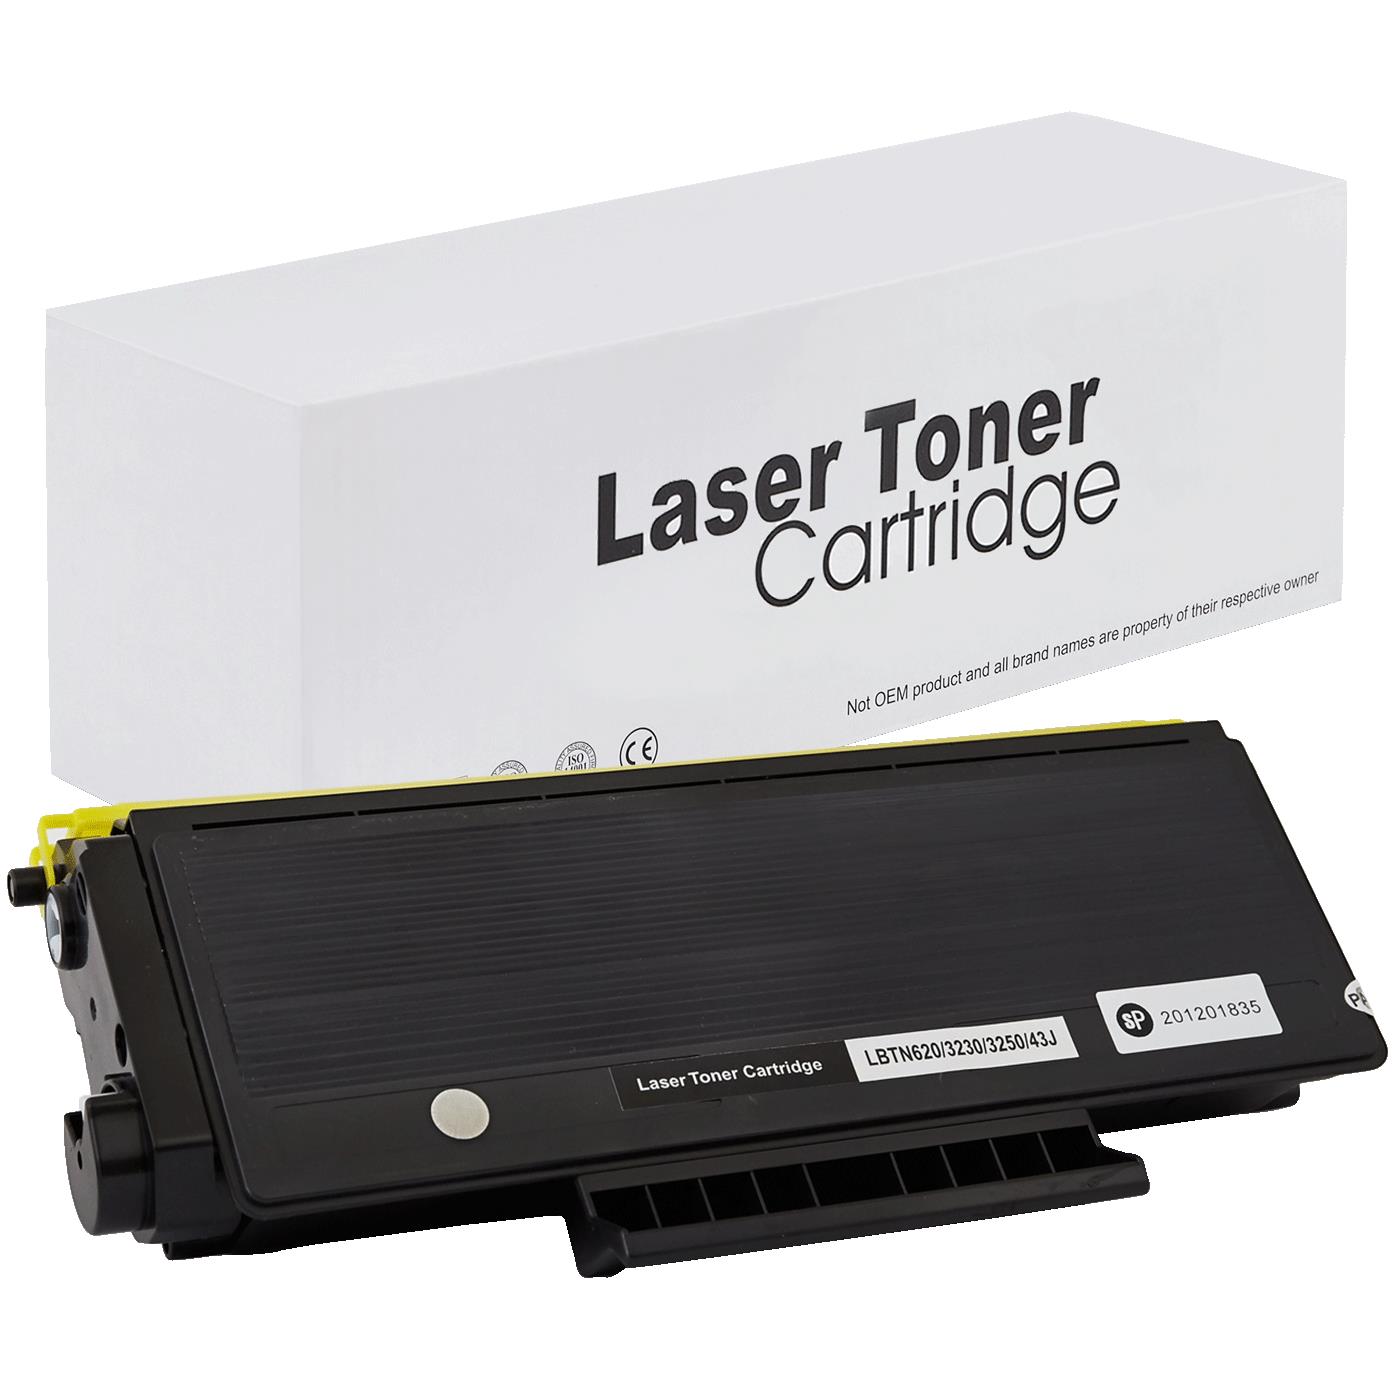 съвместима тонер касета за принтери и печатащи устройства на Brother HL 5340 DL Toner BR-3230 | TN3230. Ниски цени, прецизно изпълнение, високо качество.